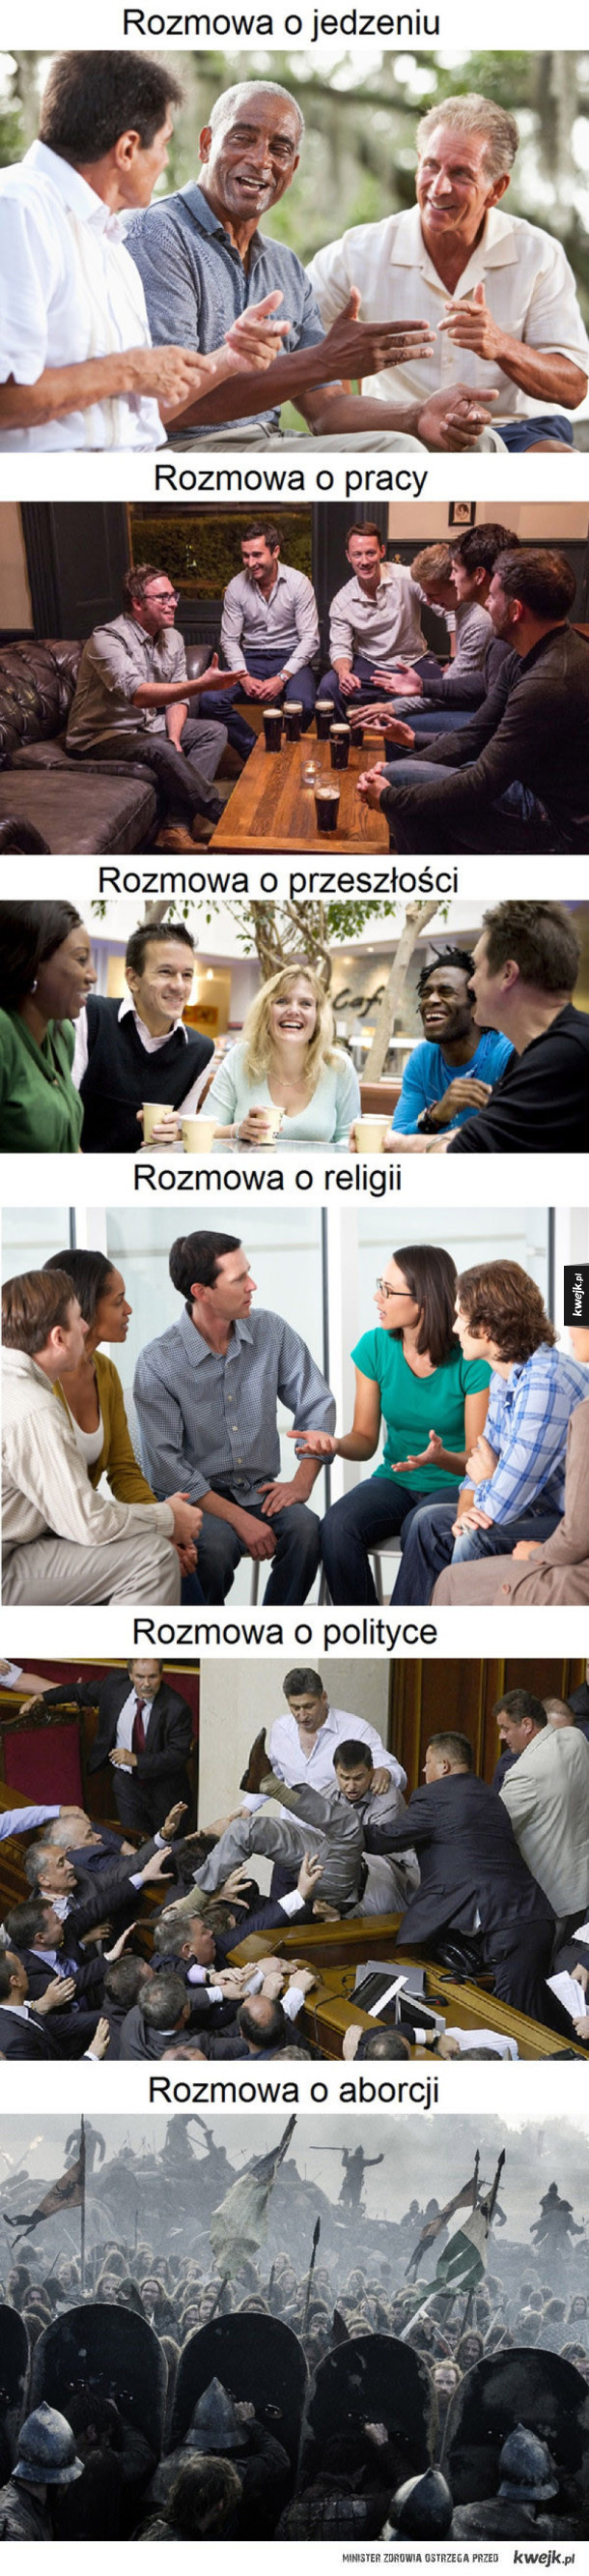 Poziom dyskusji w Polsce